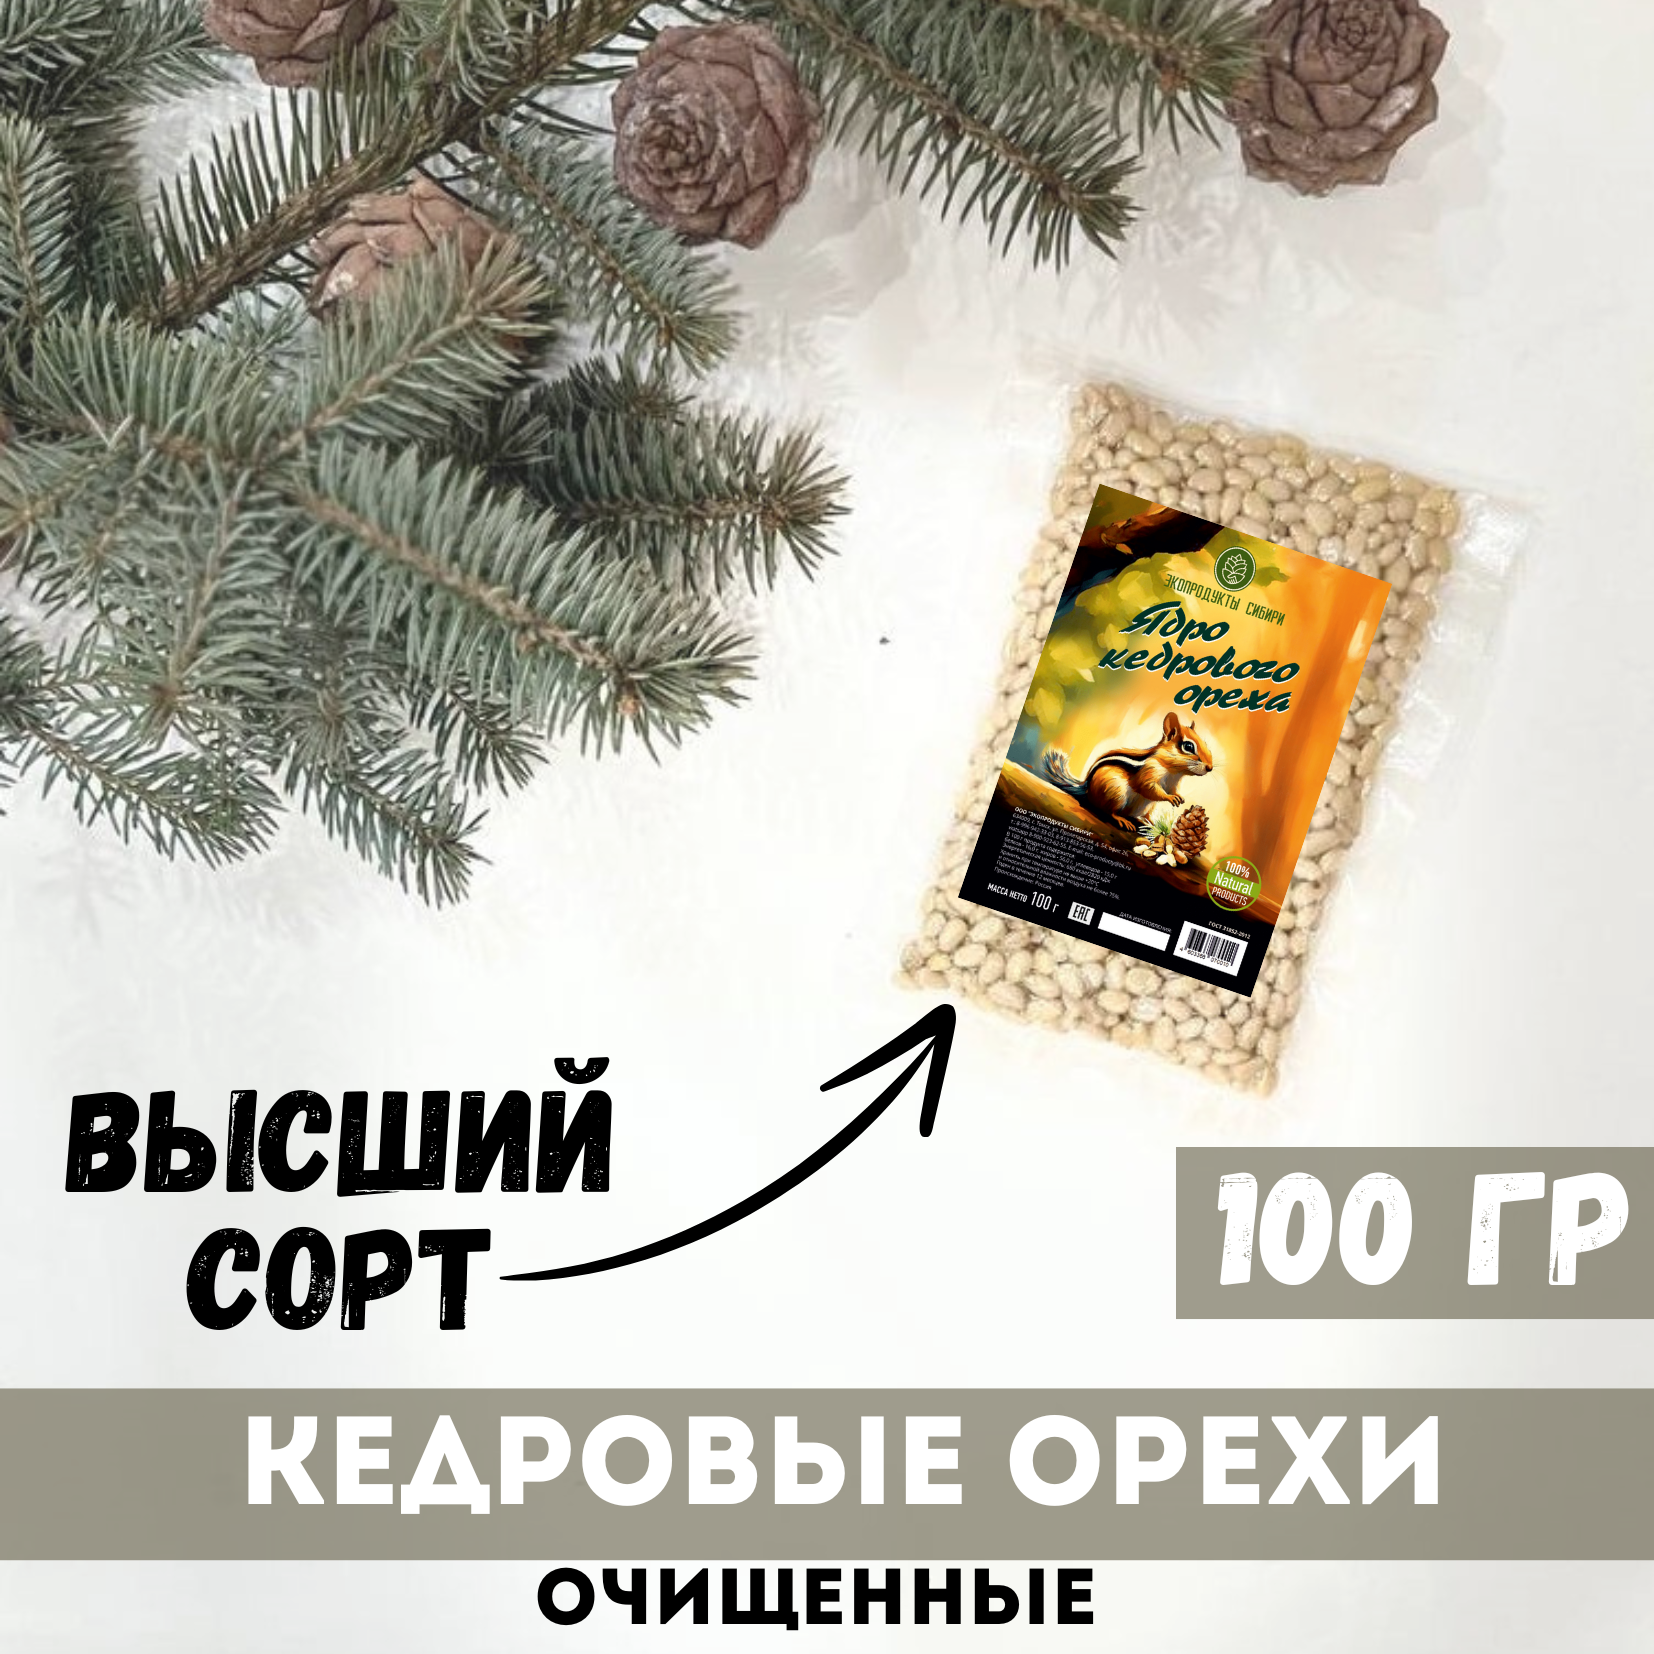 Кедровые орехи очищенные Экопродукты Сибири Высший сорт, 100 г